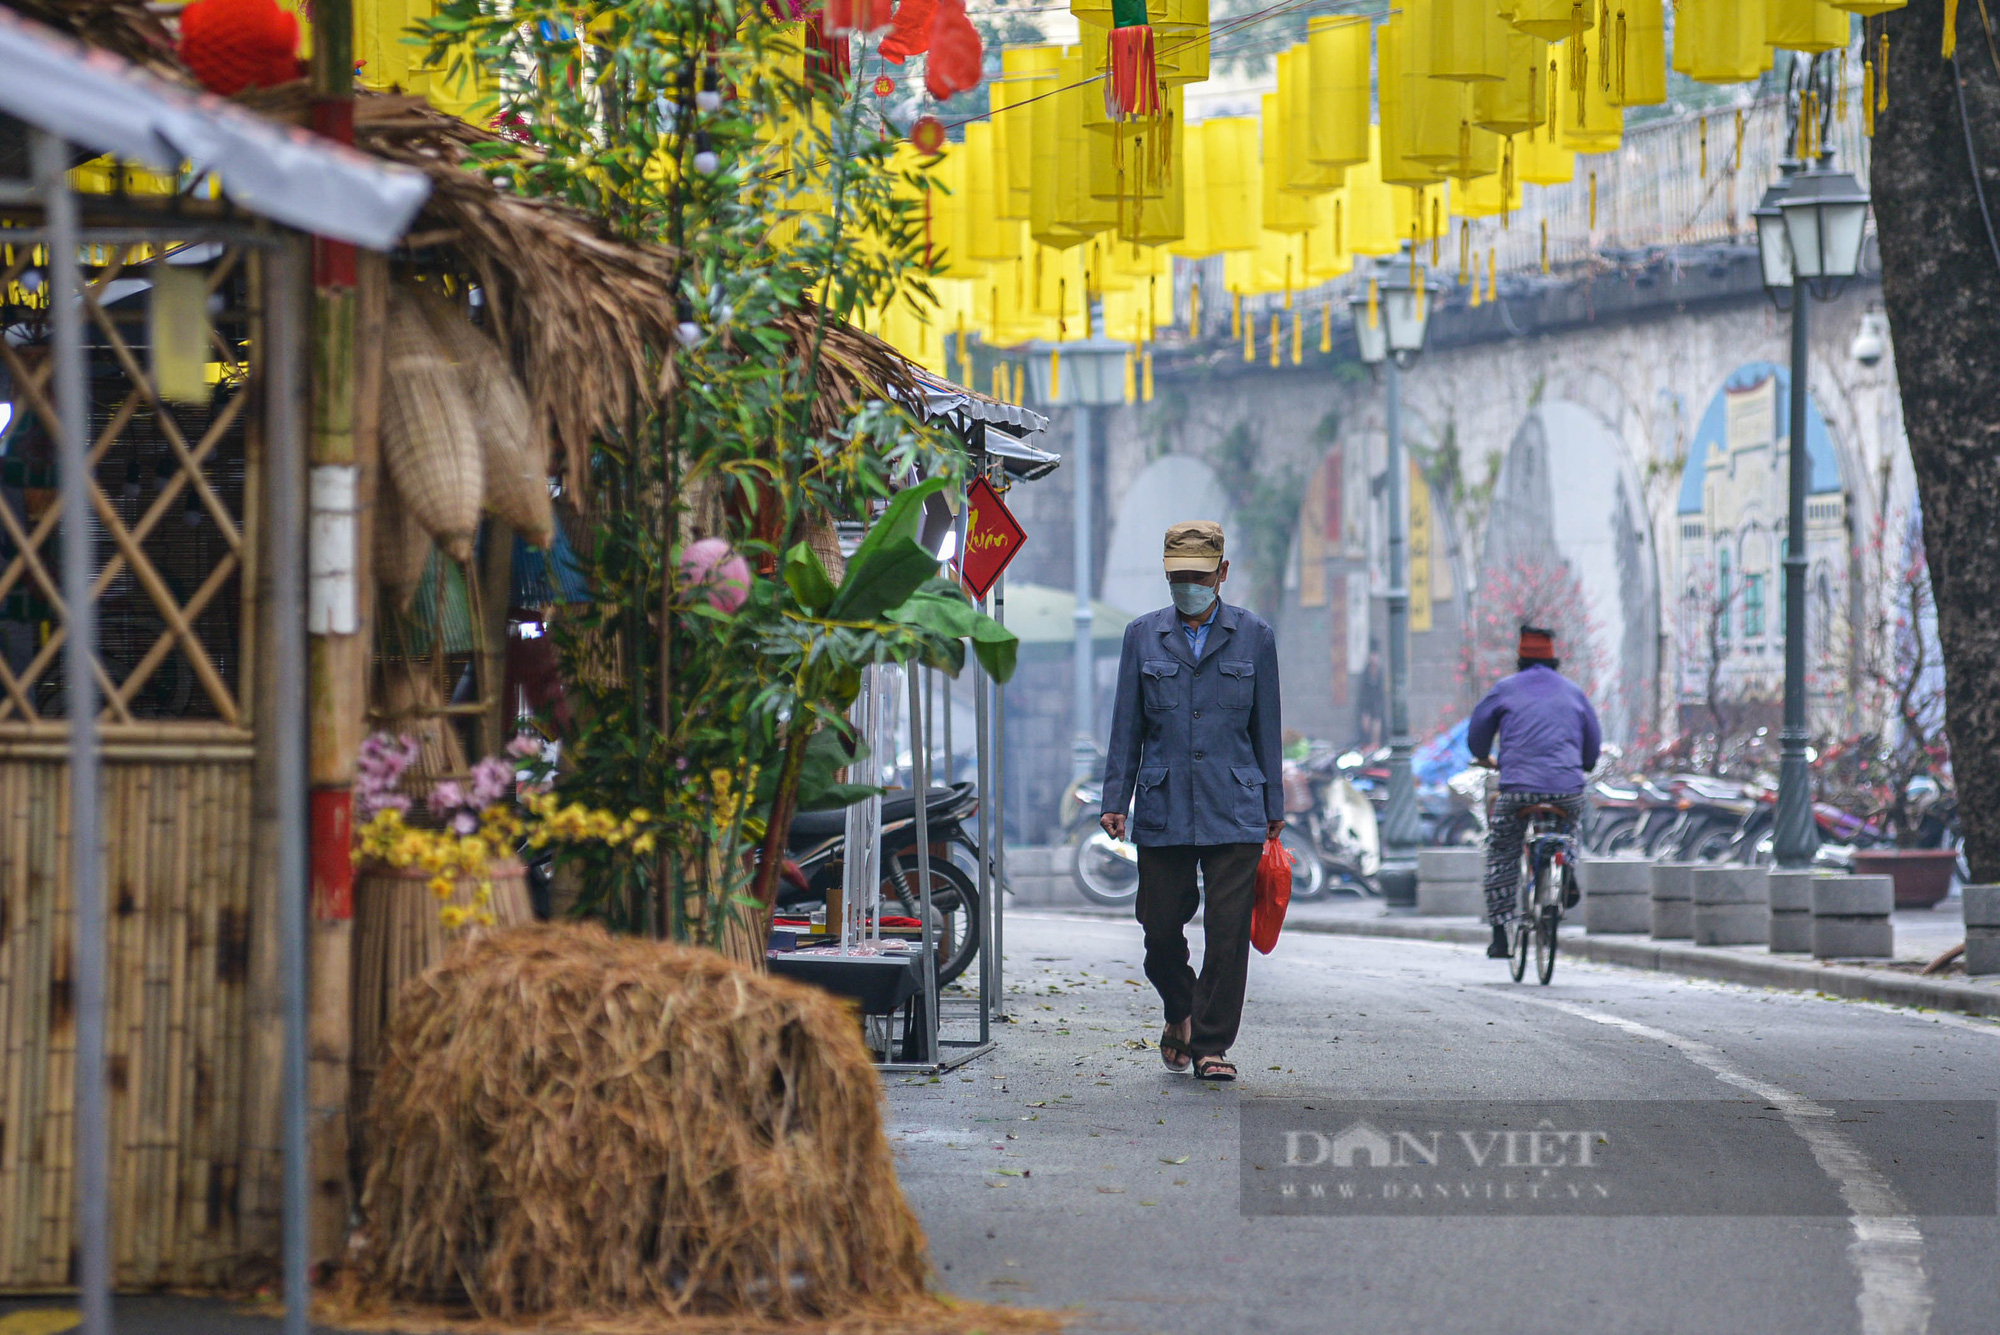 Chợ hoa truyền thống nổi tiếng nhất Hà Nội đìu hiu khách ngày đầu khai mạc - Ảnh 11.